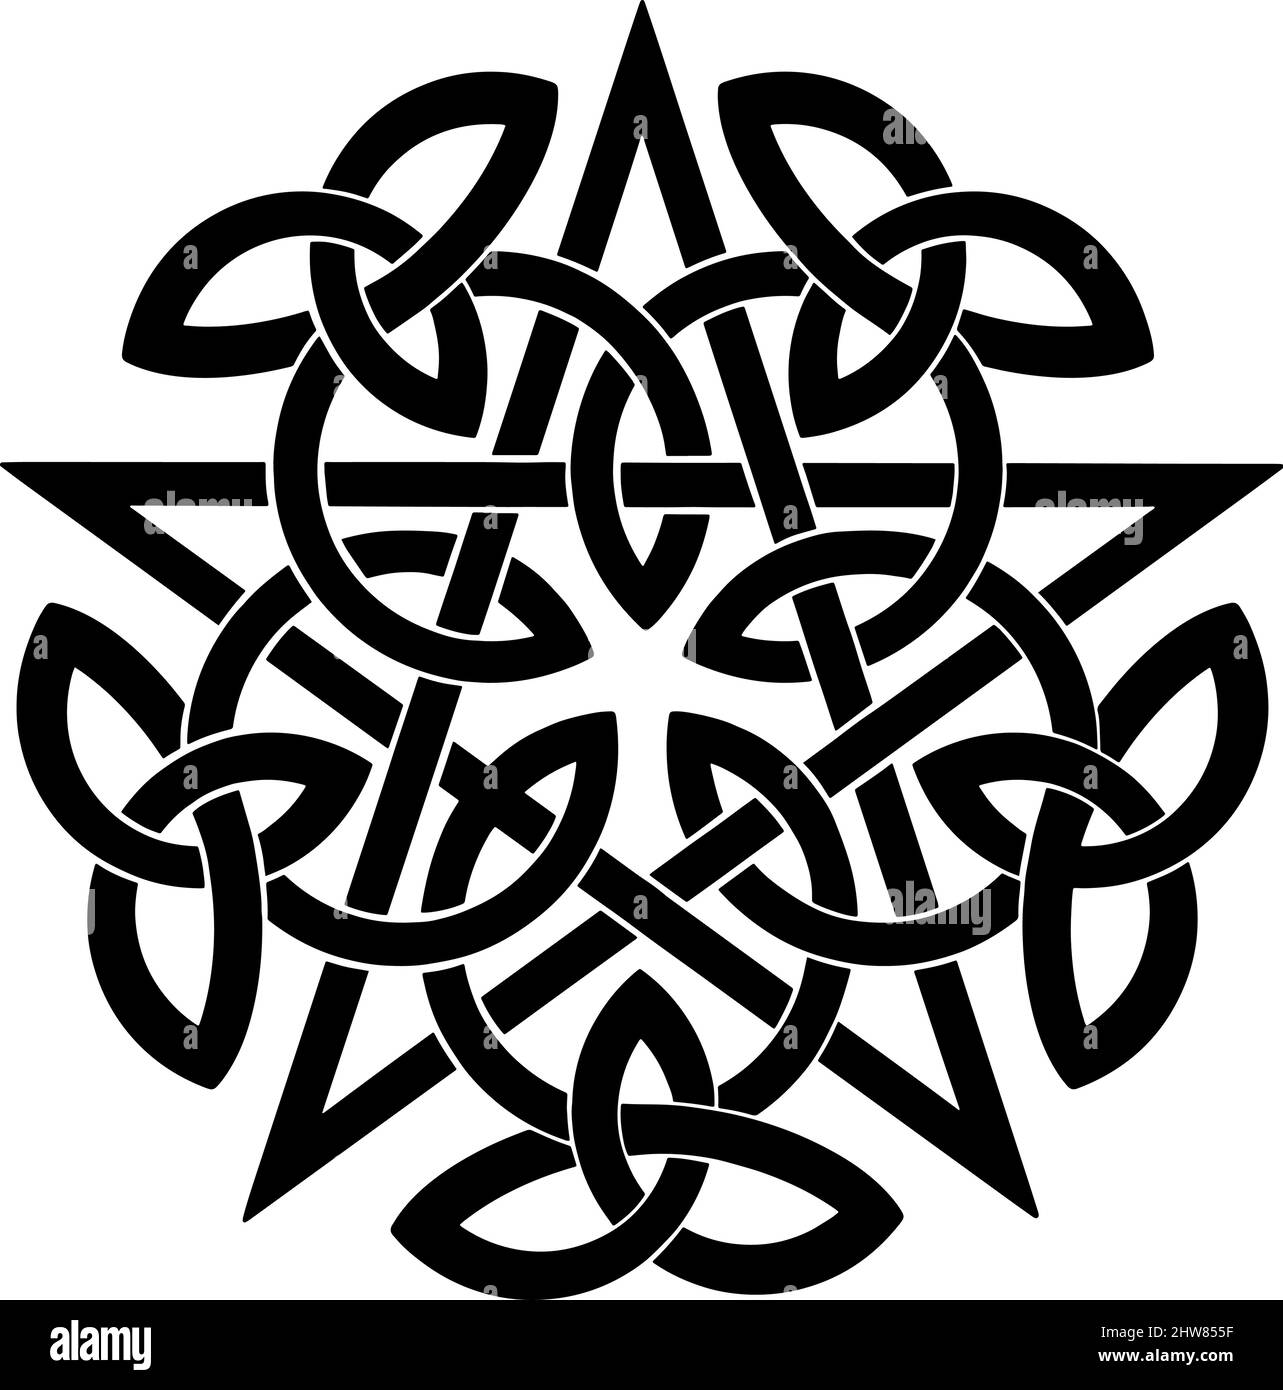 Pentagramma nero con nodi celtici. Illustrazione vettoriale Illustrazione Vettoriale